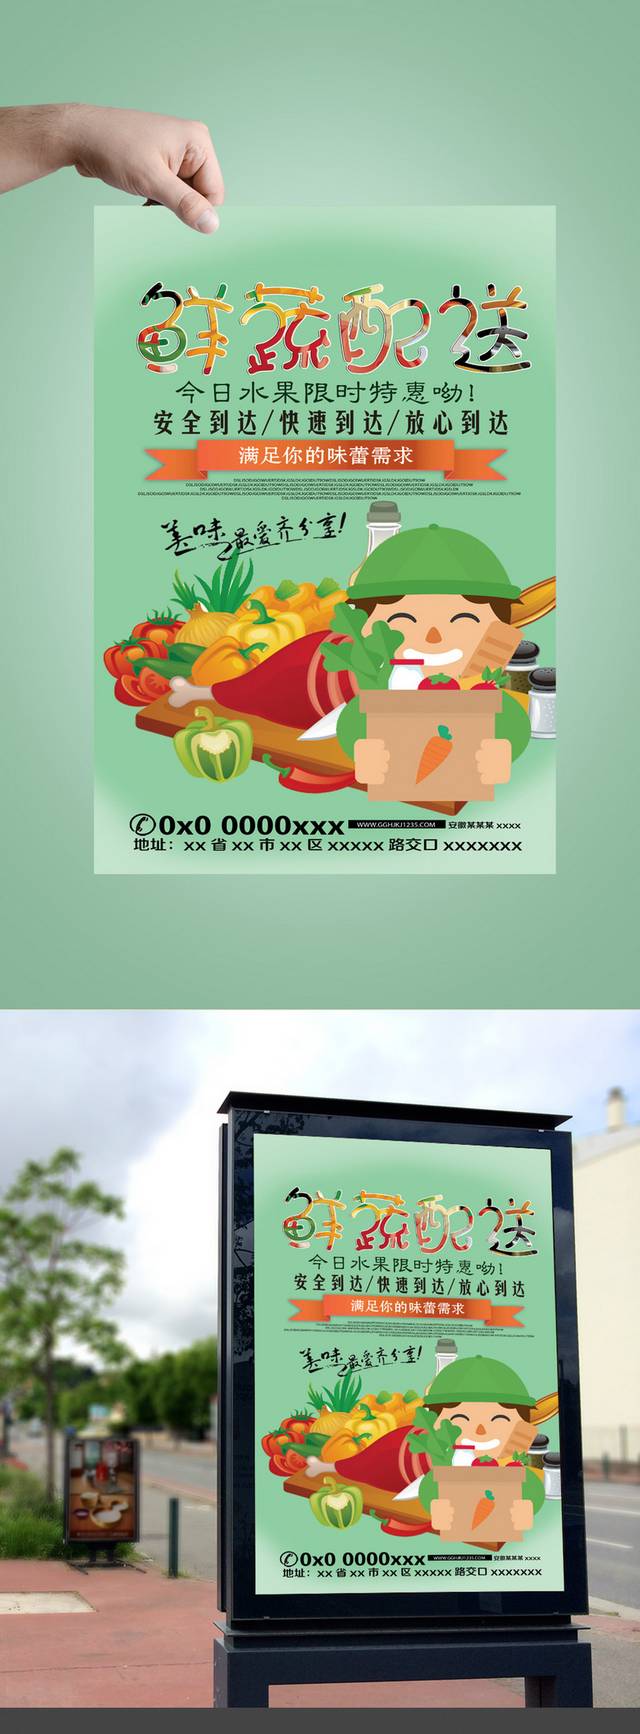 果蔬配送宣传海报